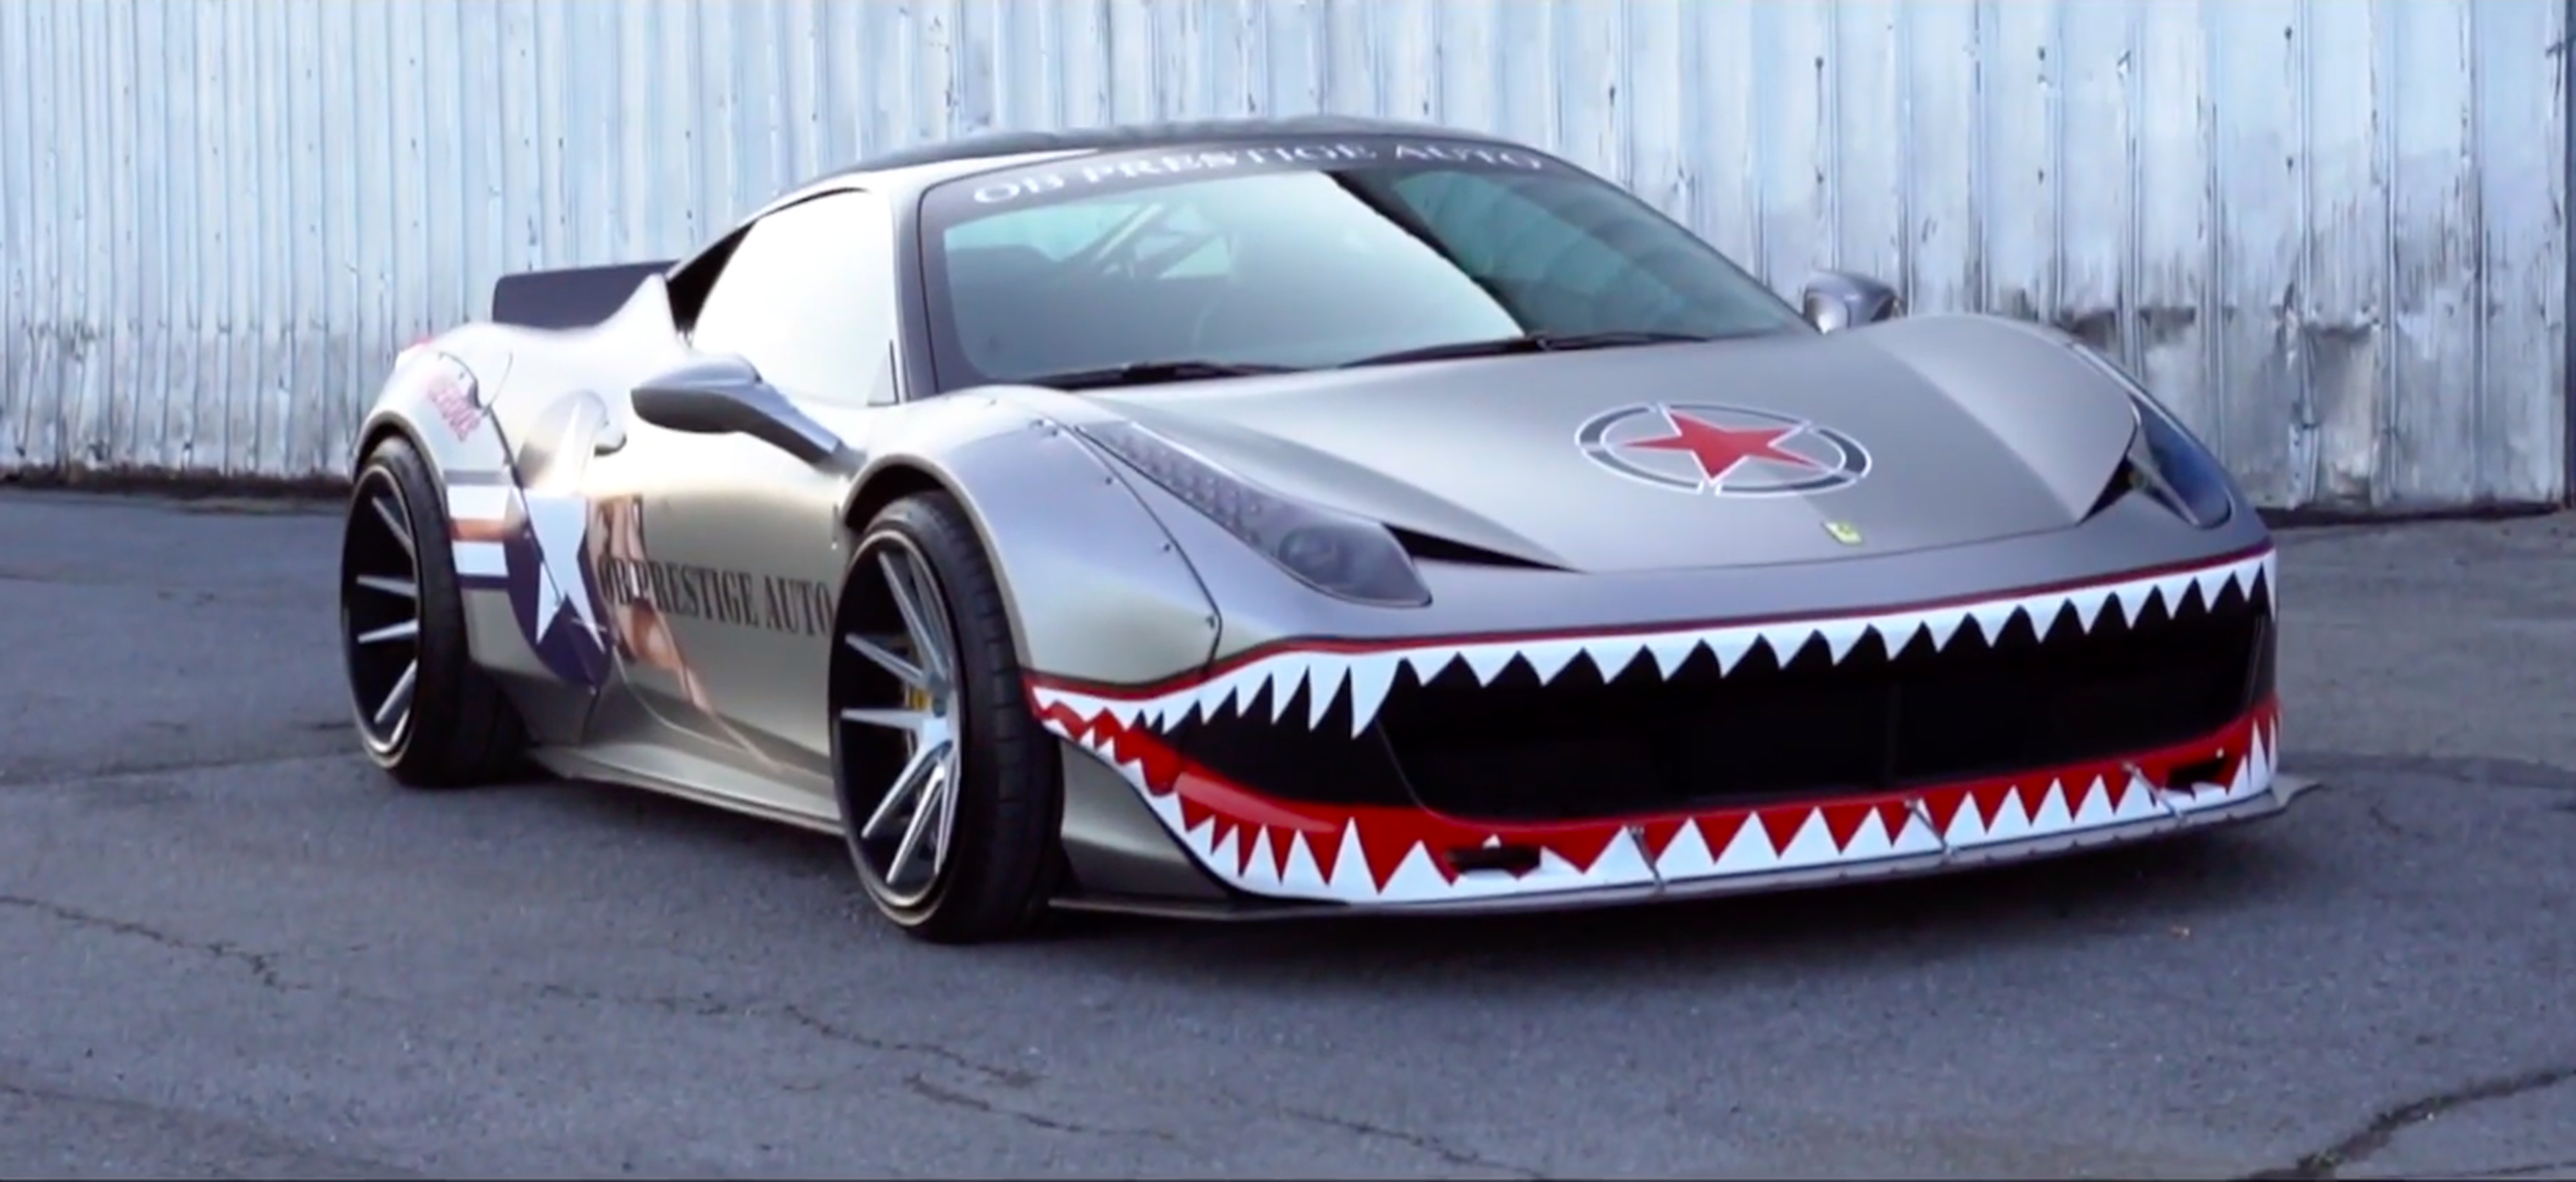 VÍDEO: Ferrari 458 Italia con diseño de tiburón y escapes modificados, ¡qué locura!